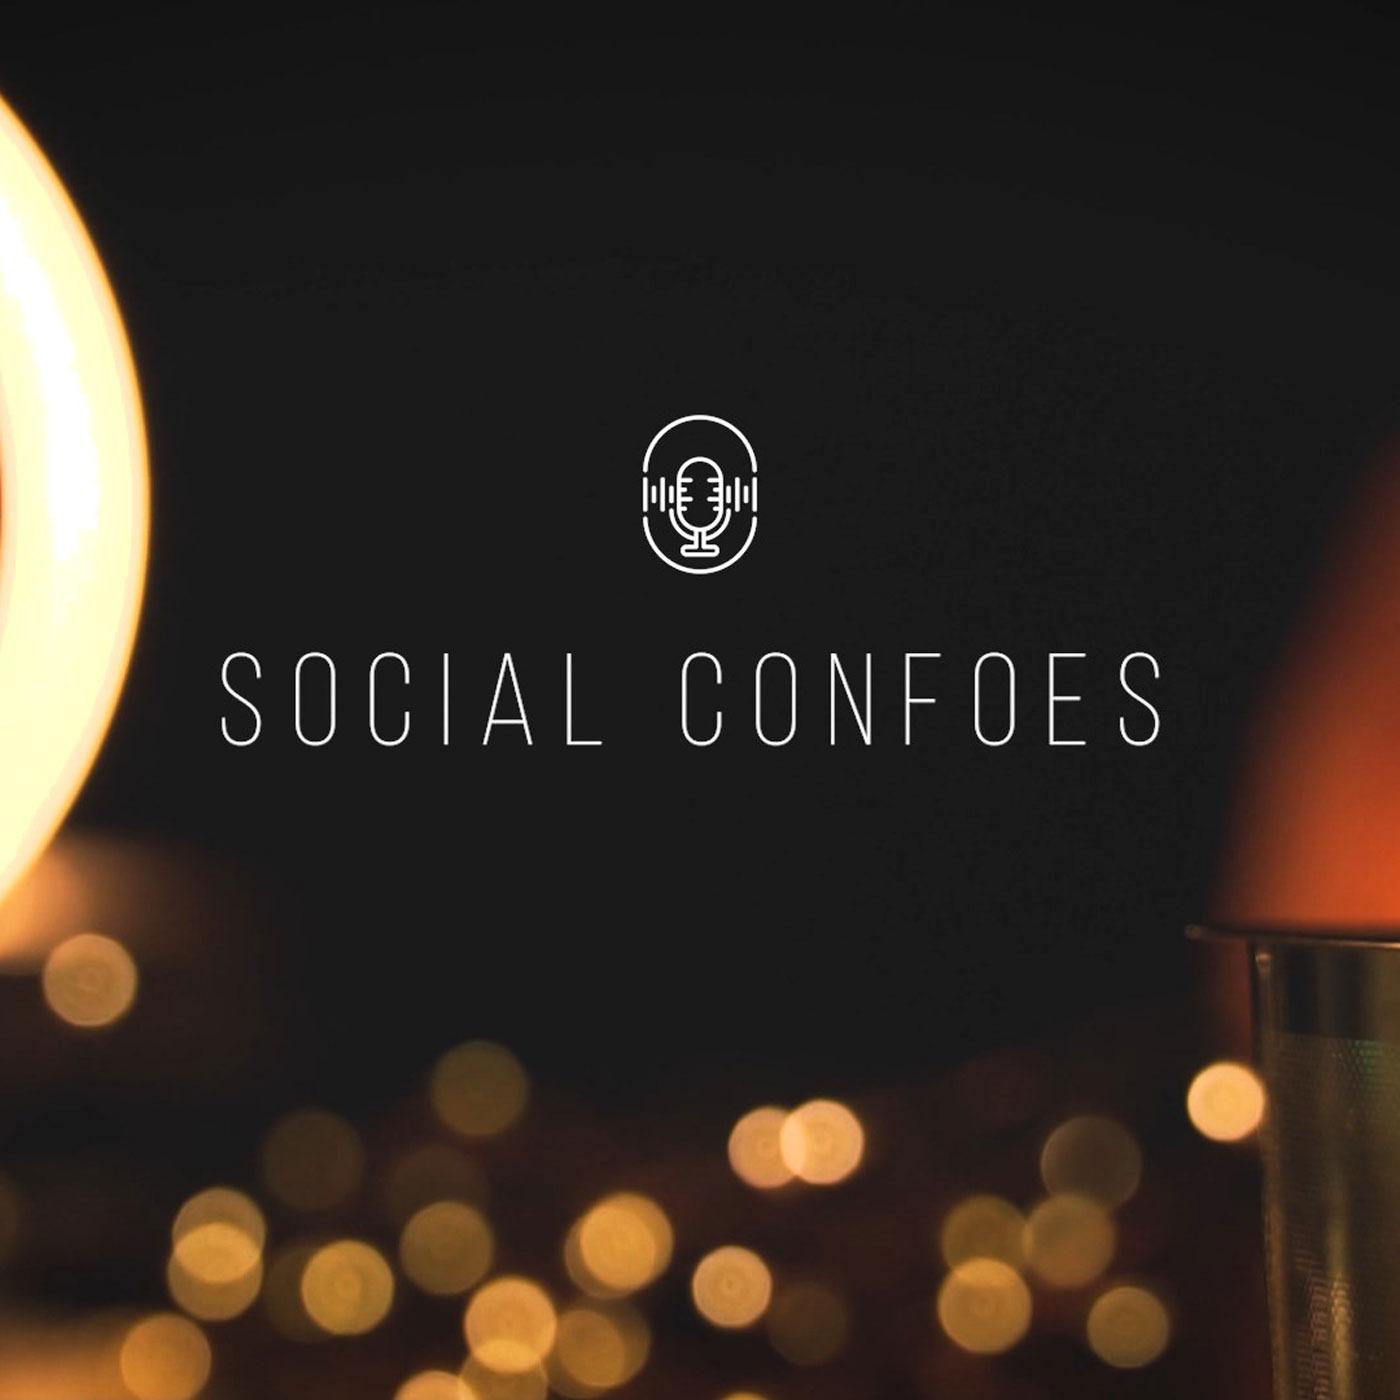 Social Confoes